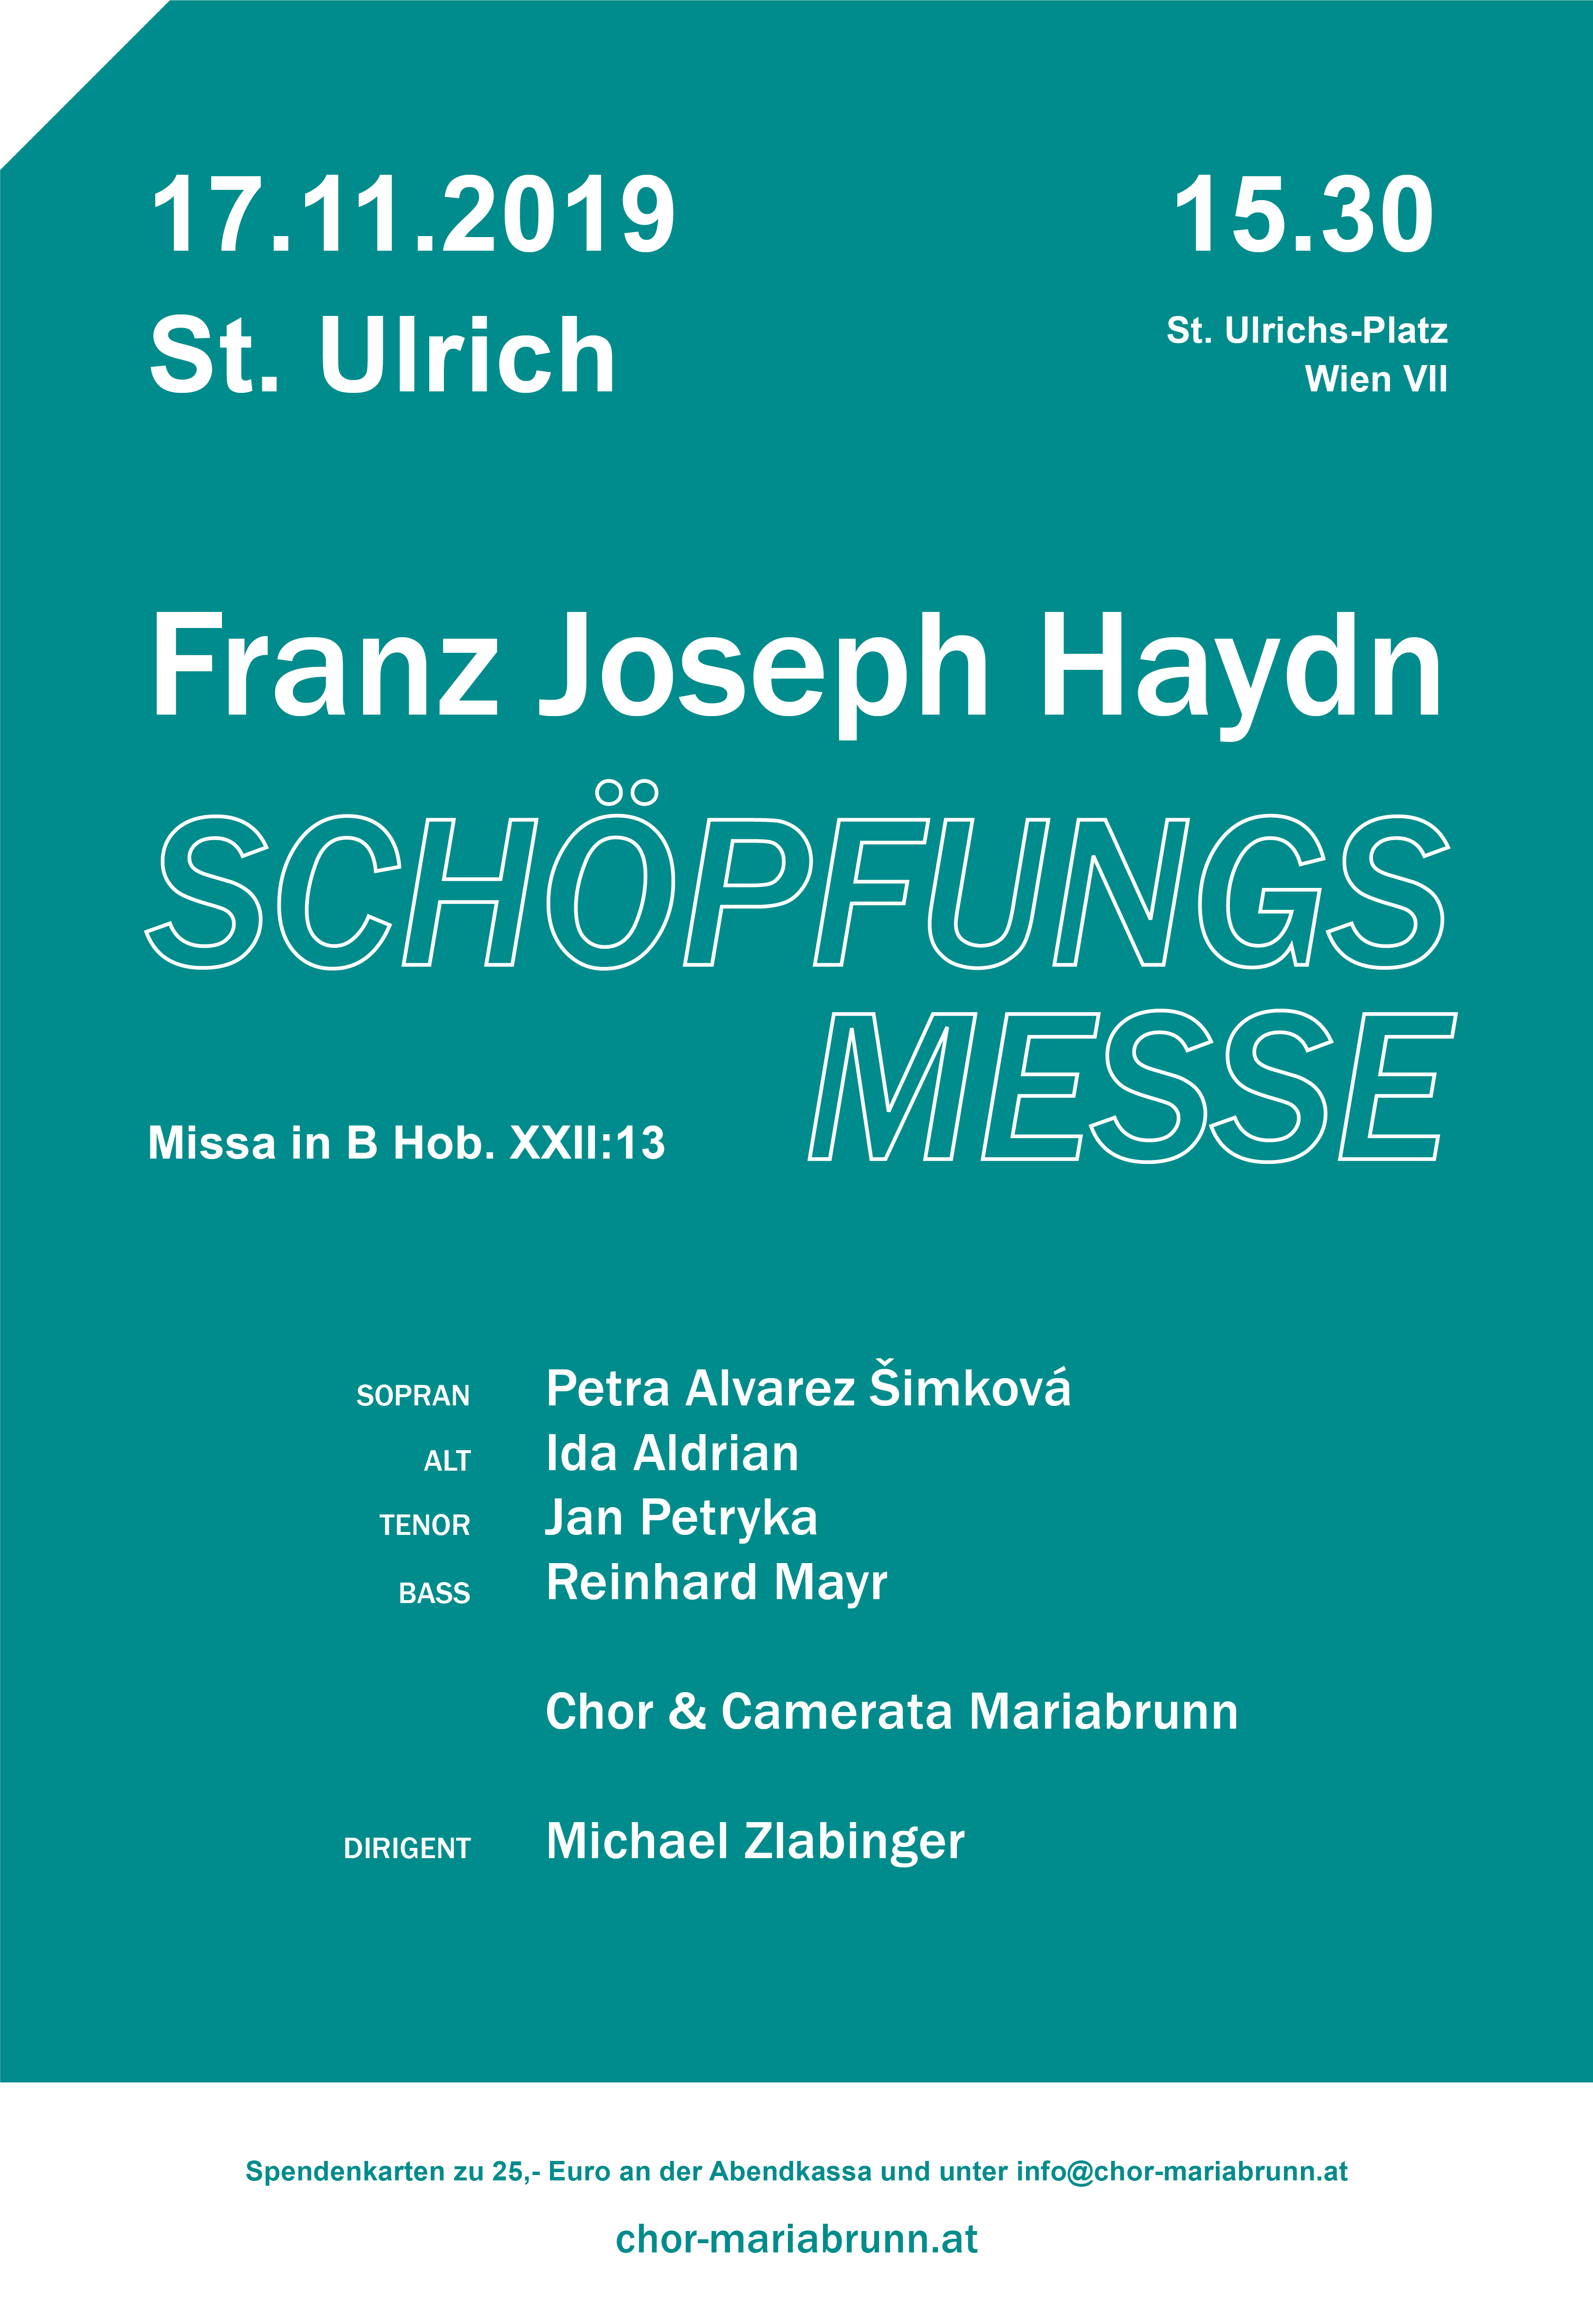 Joseph Haydn: Schöpfungsmesse (Missa in B, Hob. XXII:13)